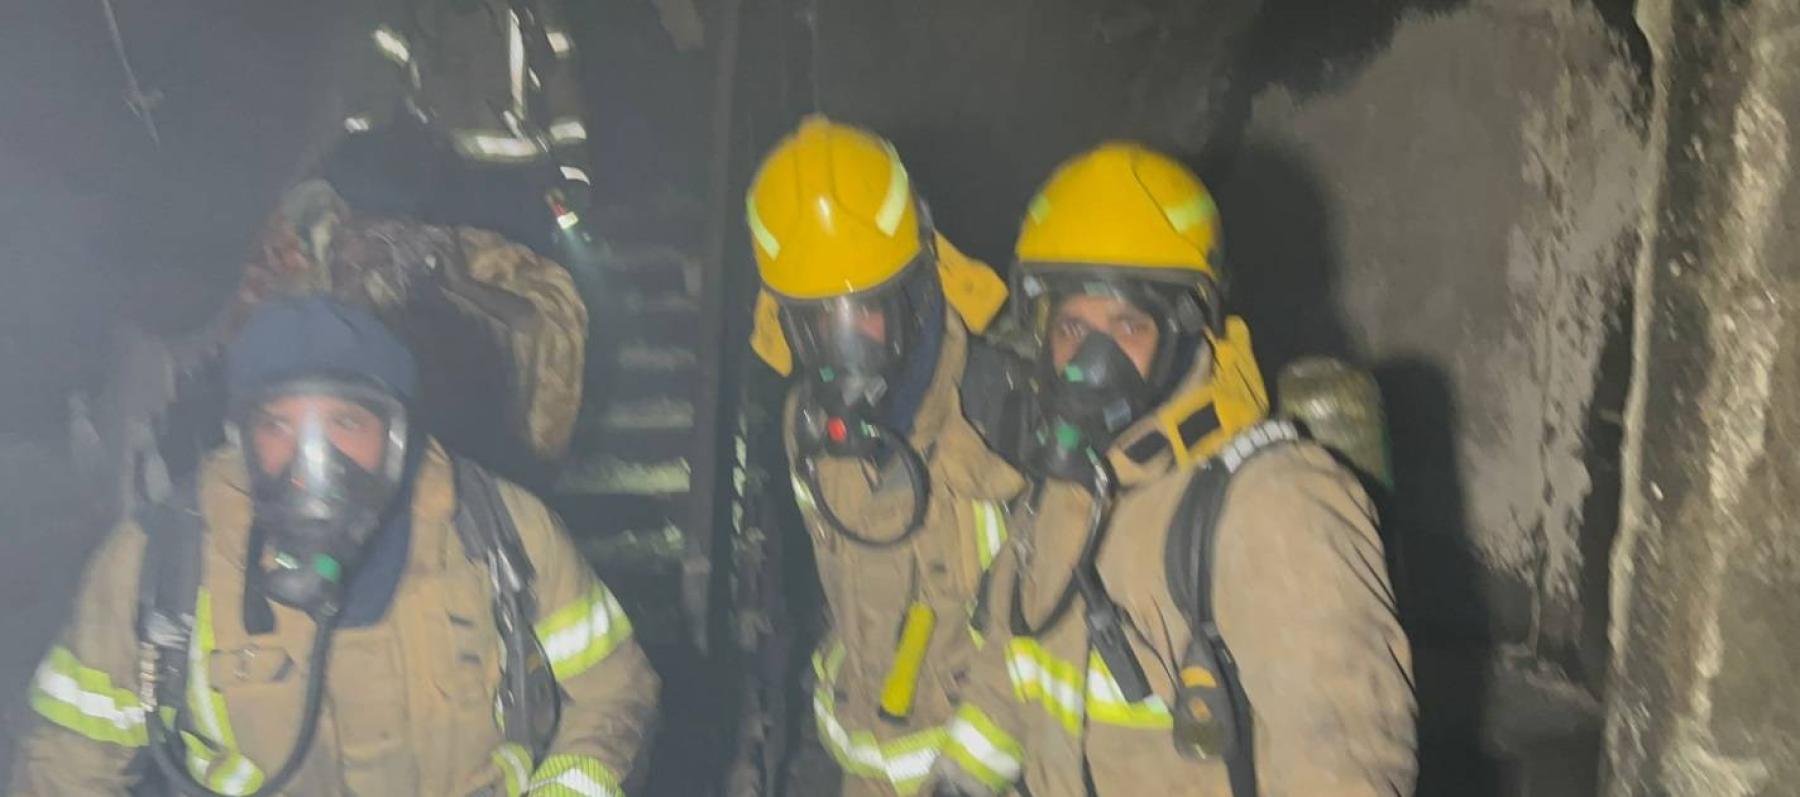 رجال الأطفاء في دولة الكويت أثناء إخماد الحريق ( كونا)